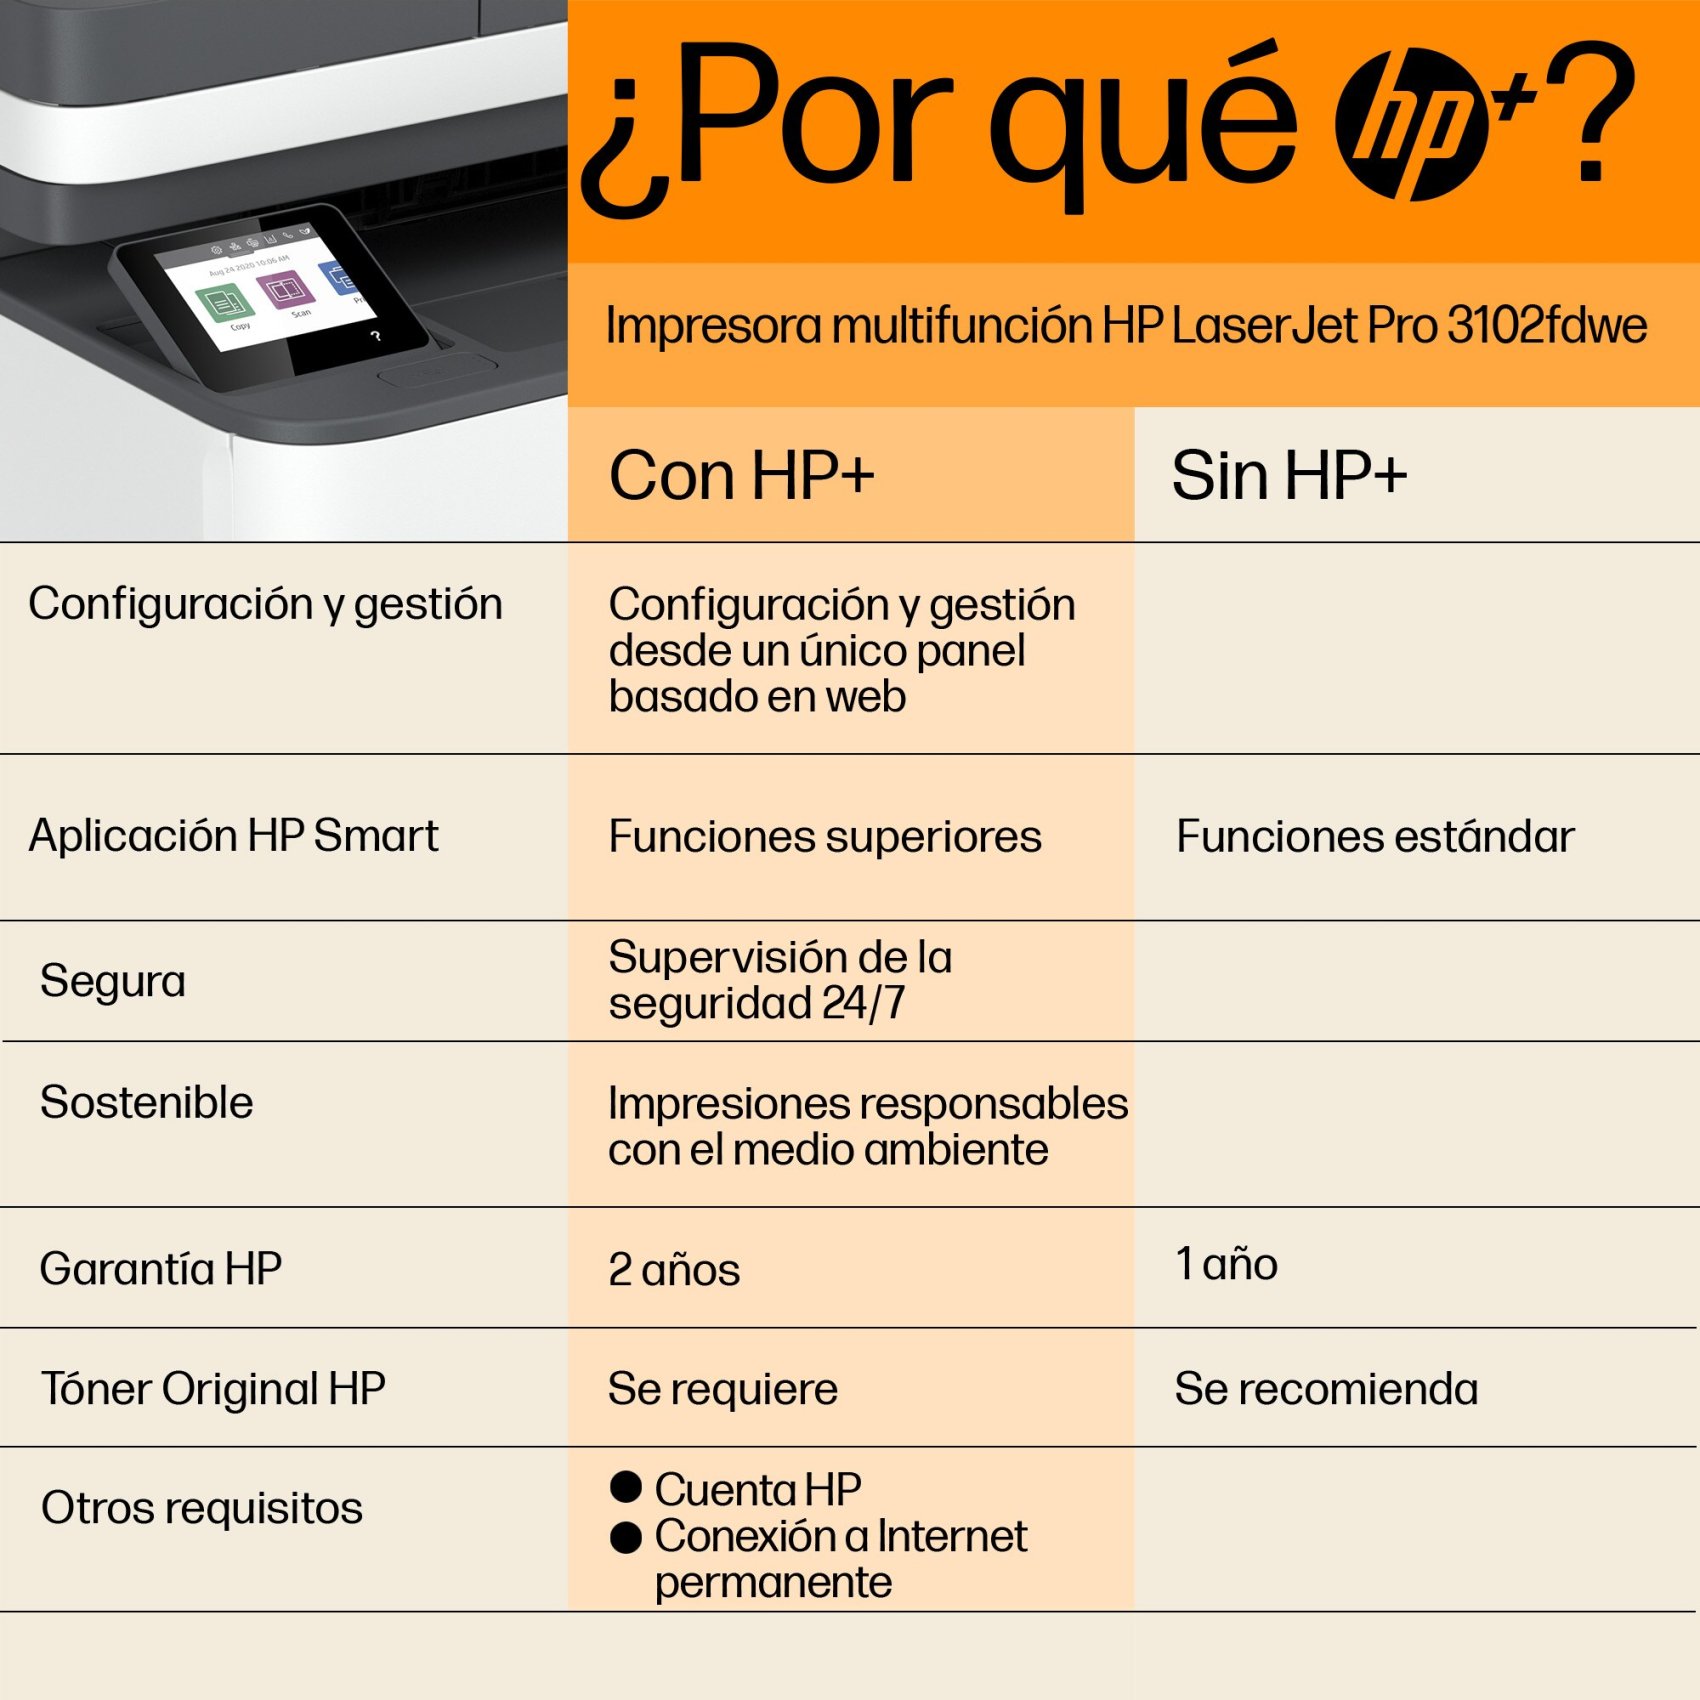 Impresora multifunción láser - Color LaserJet Pro MFP M183fw HP, Blanco